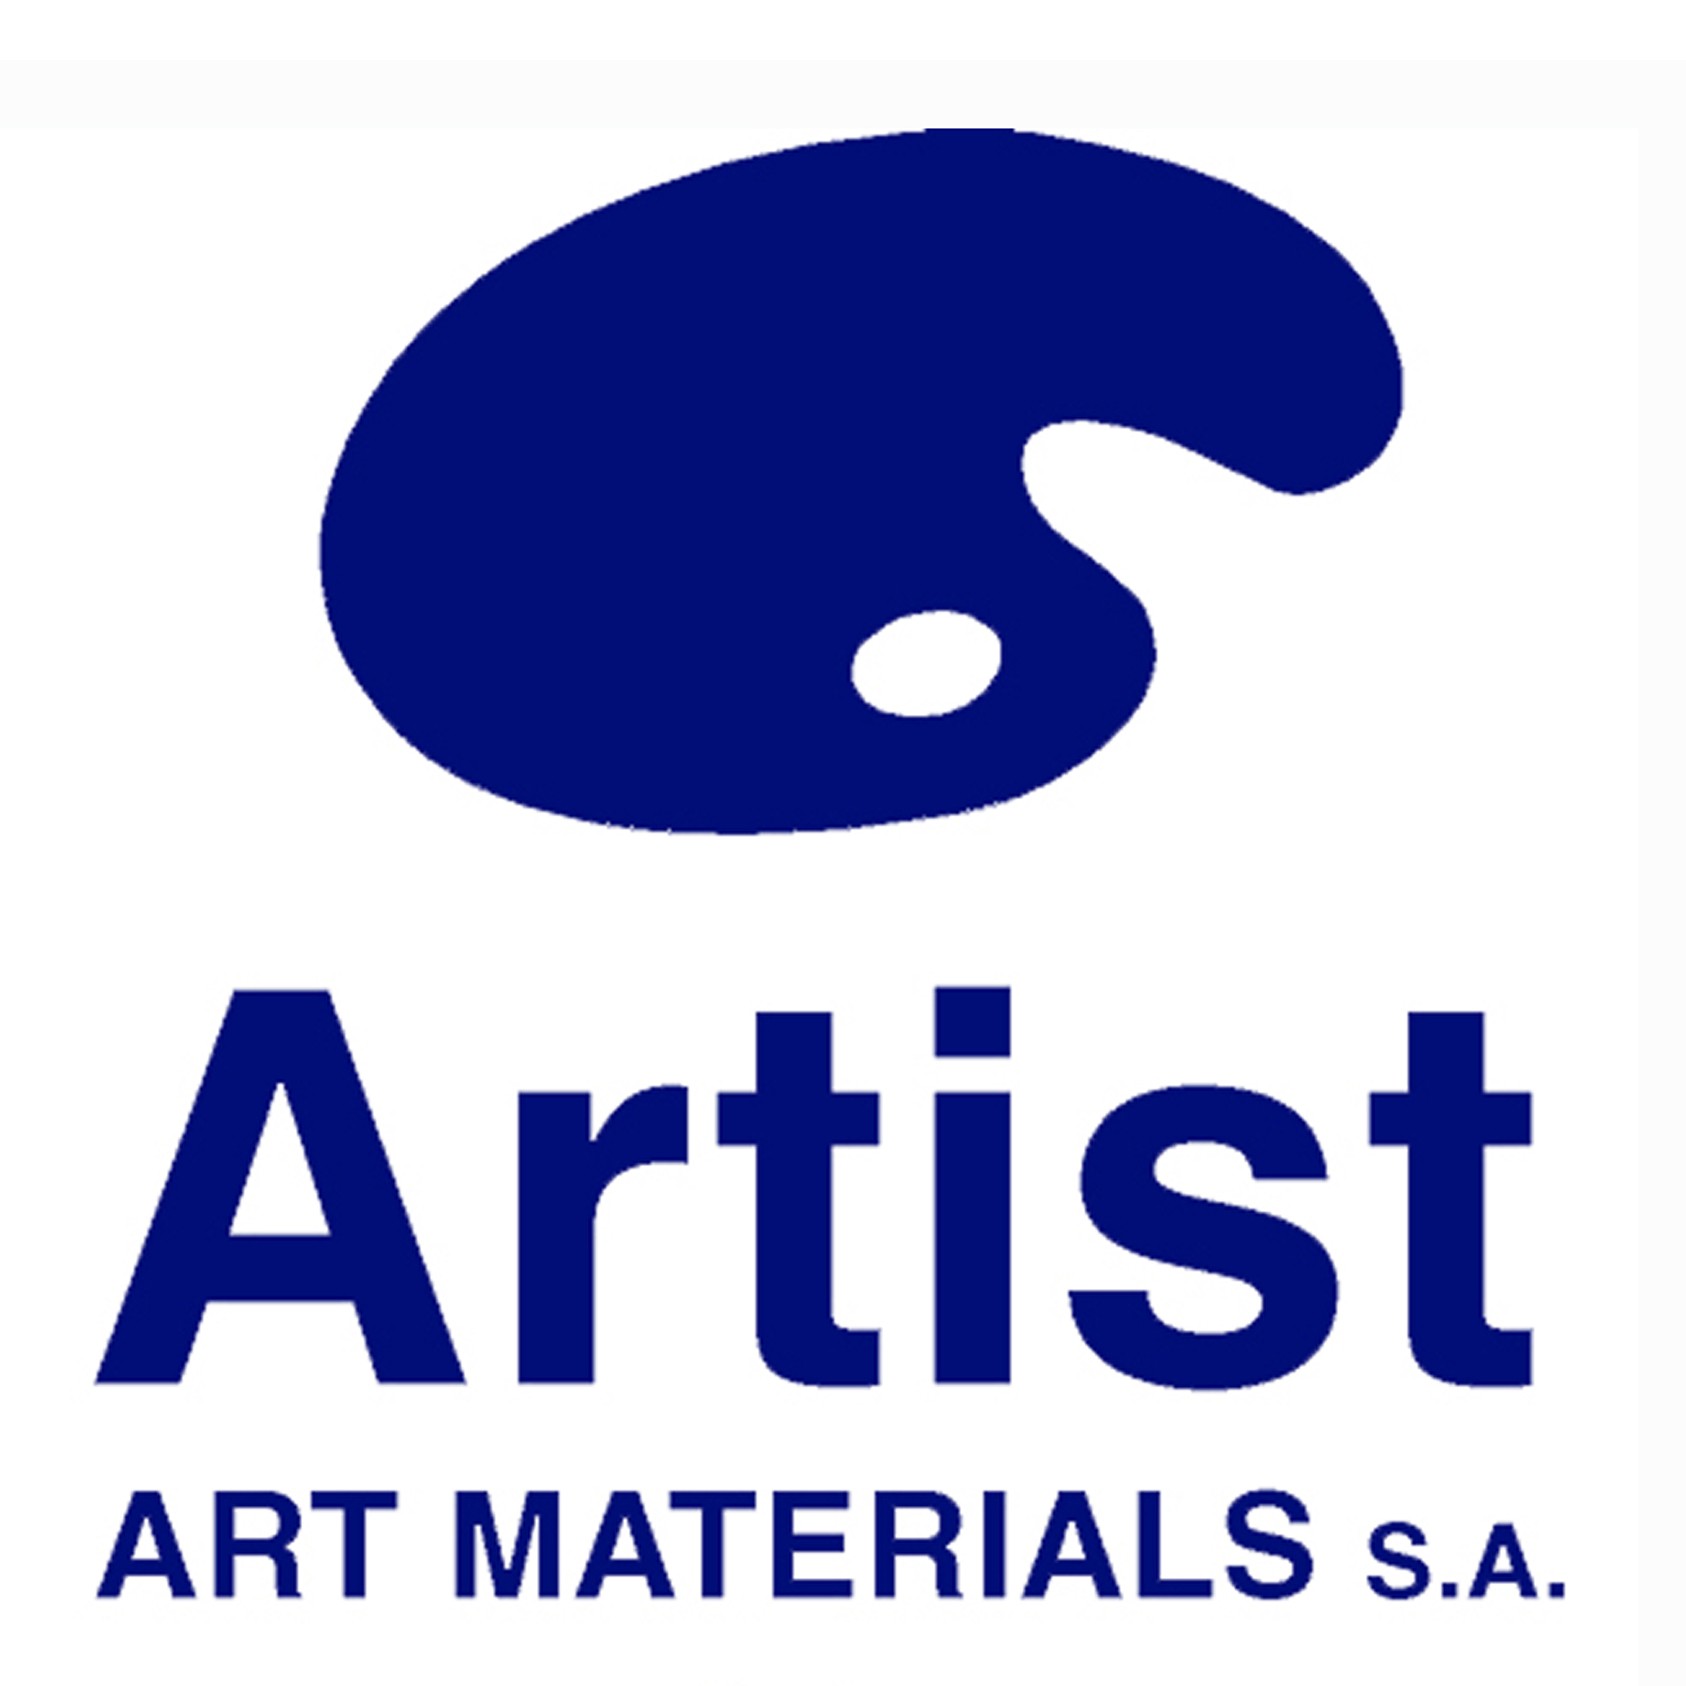 ARTIST arts materials S.A.